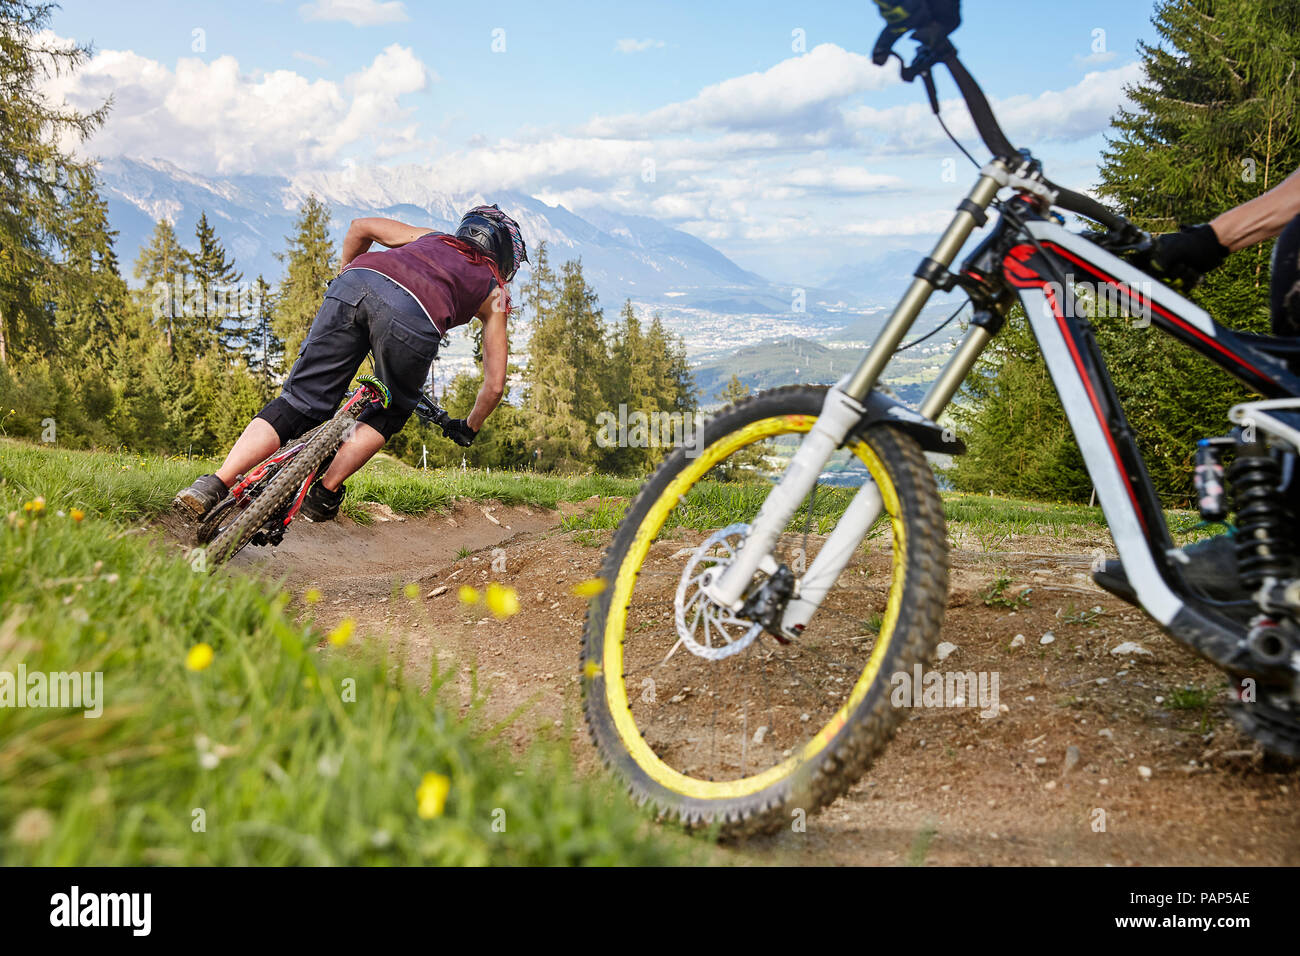 Autriche, Tyrol, femme downhill mountain biker Banque D'Images